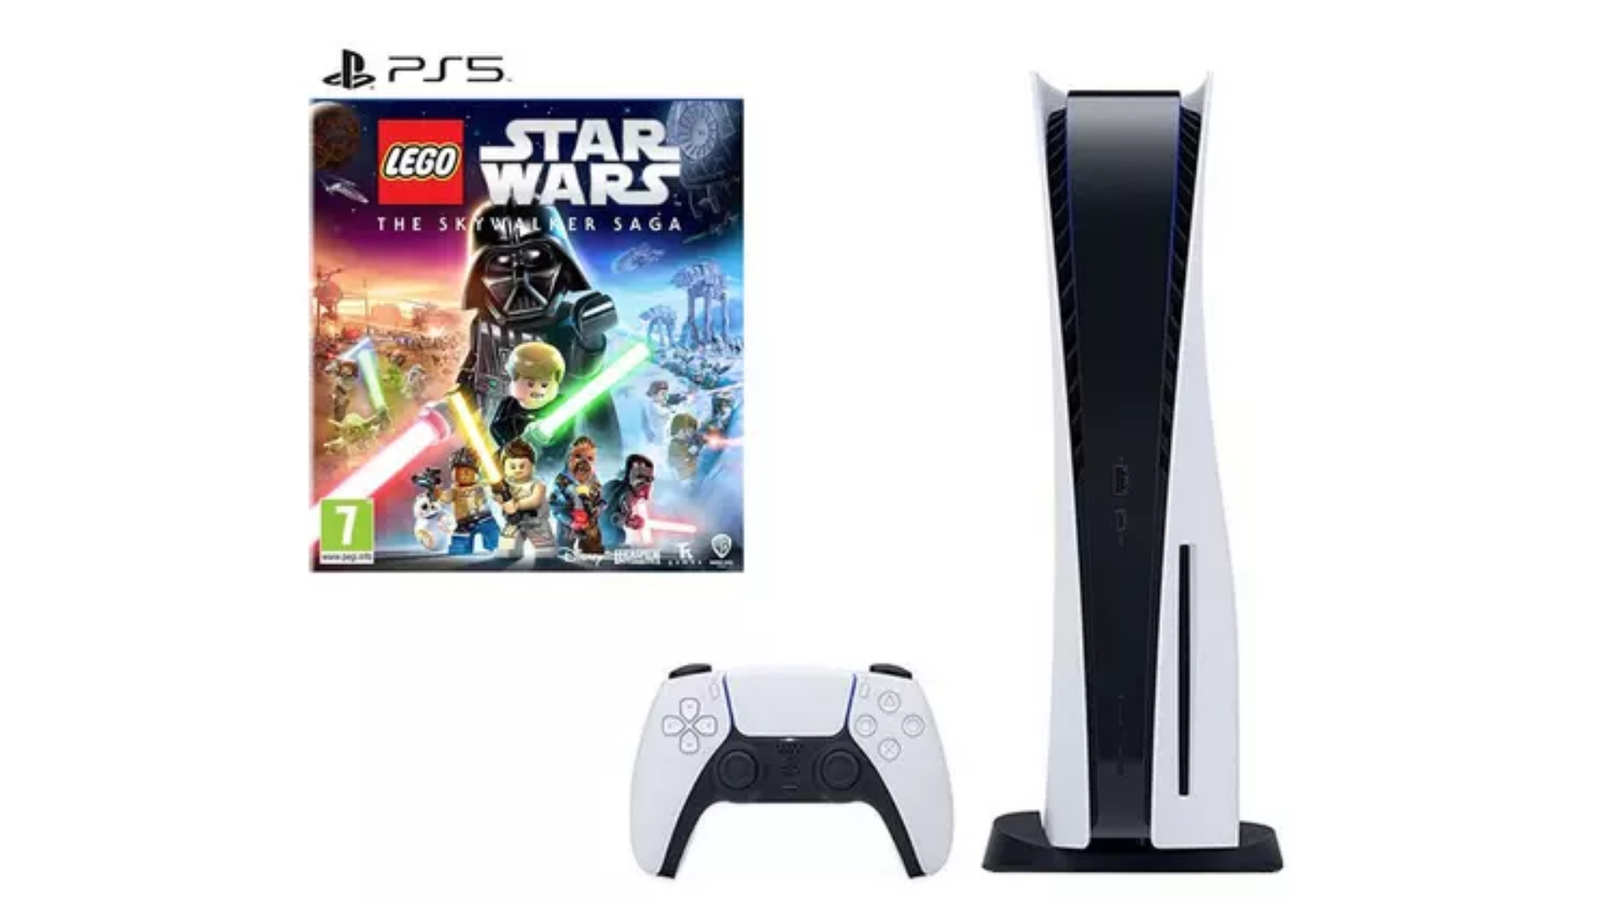 Lego Star Wars: A Saga Skywalker - PlayStation 4